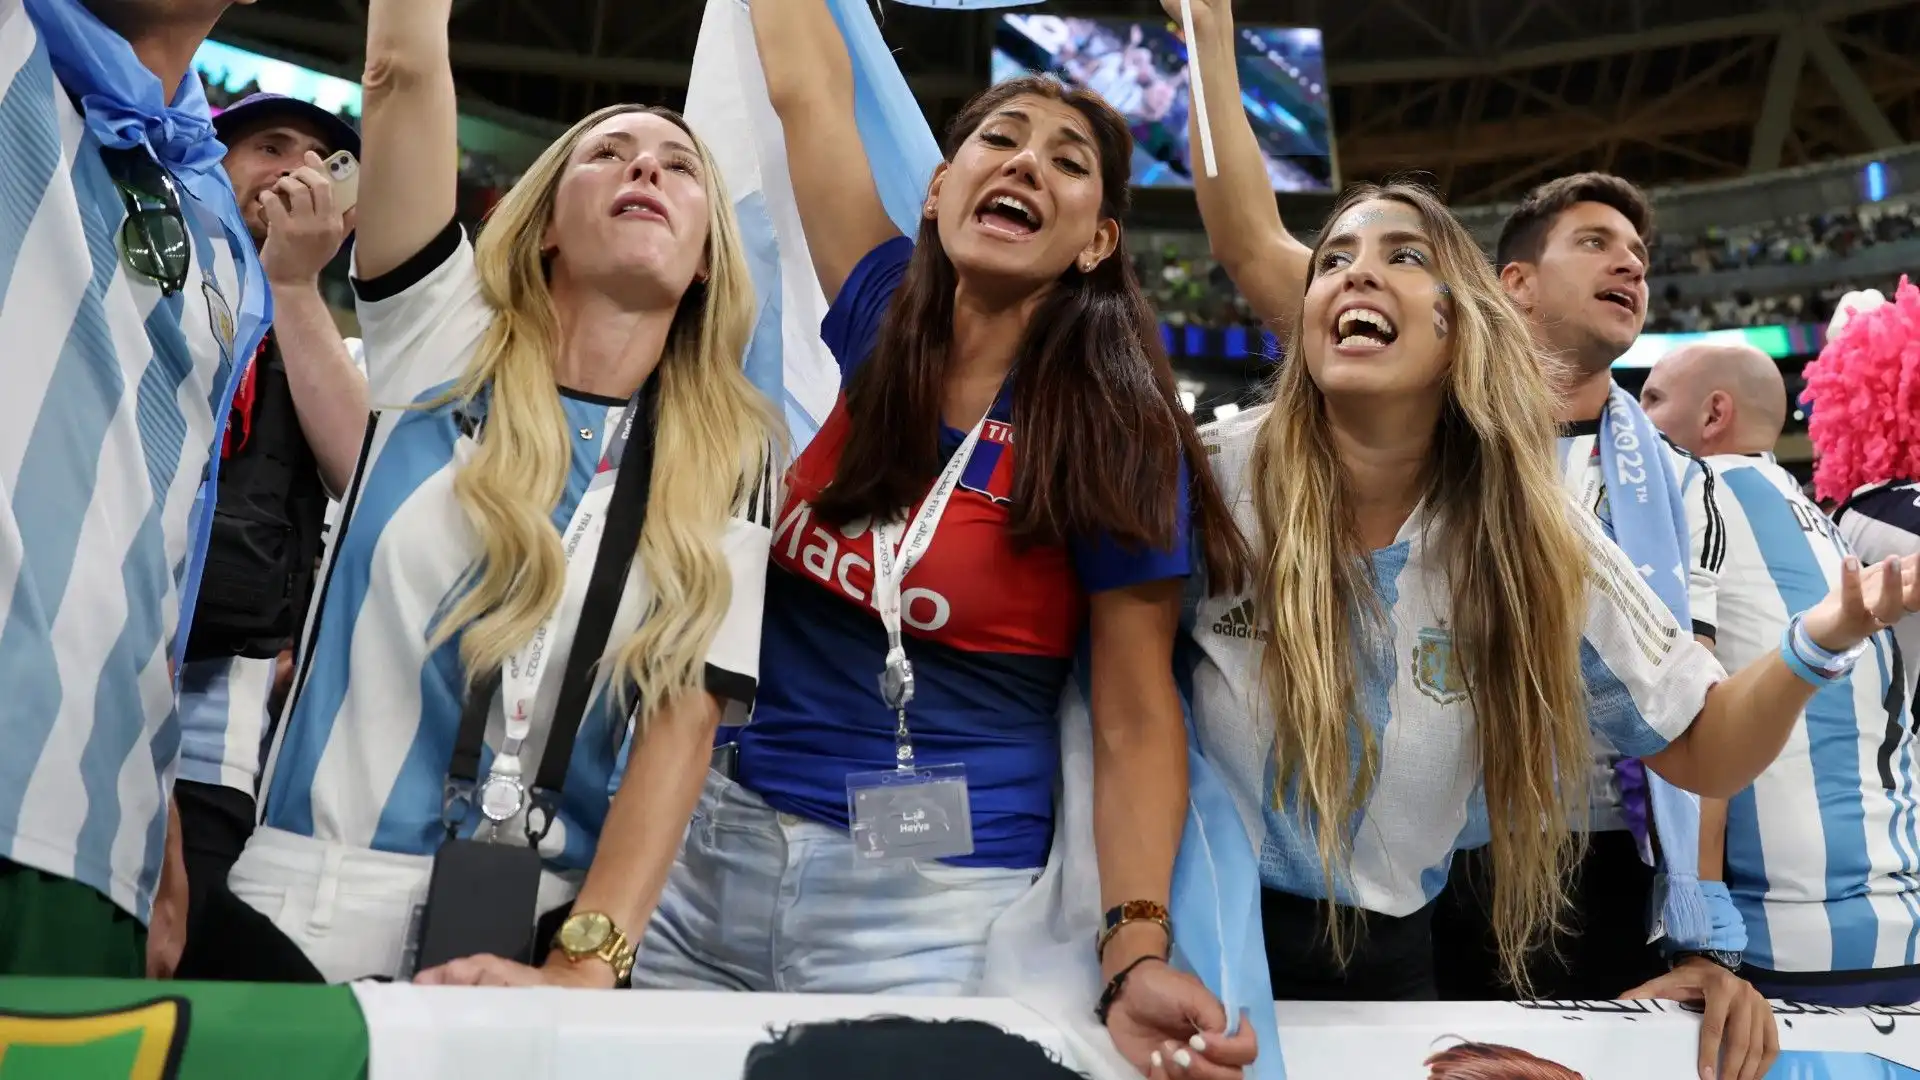 In mezzo ai tifosi dell'Argentina ci sono tre scatenate ragazze, in tribuna per sostenere Messi e compagni.